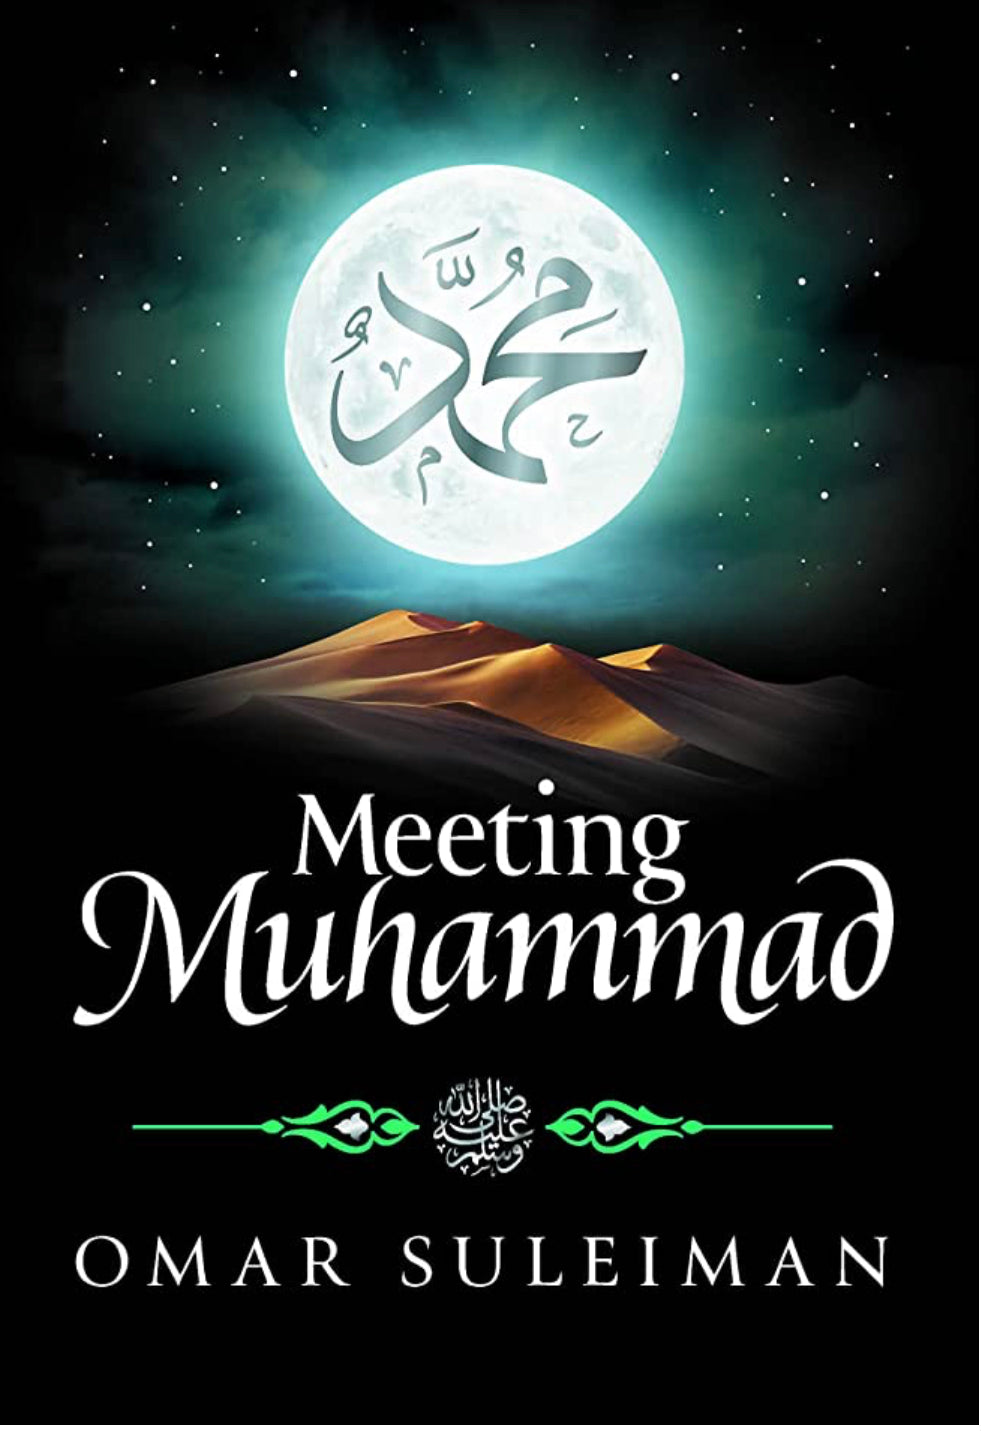 Meeting Muhammed by Omar Suleiman